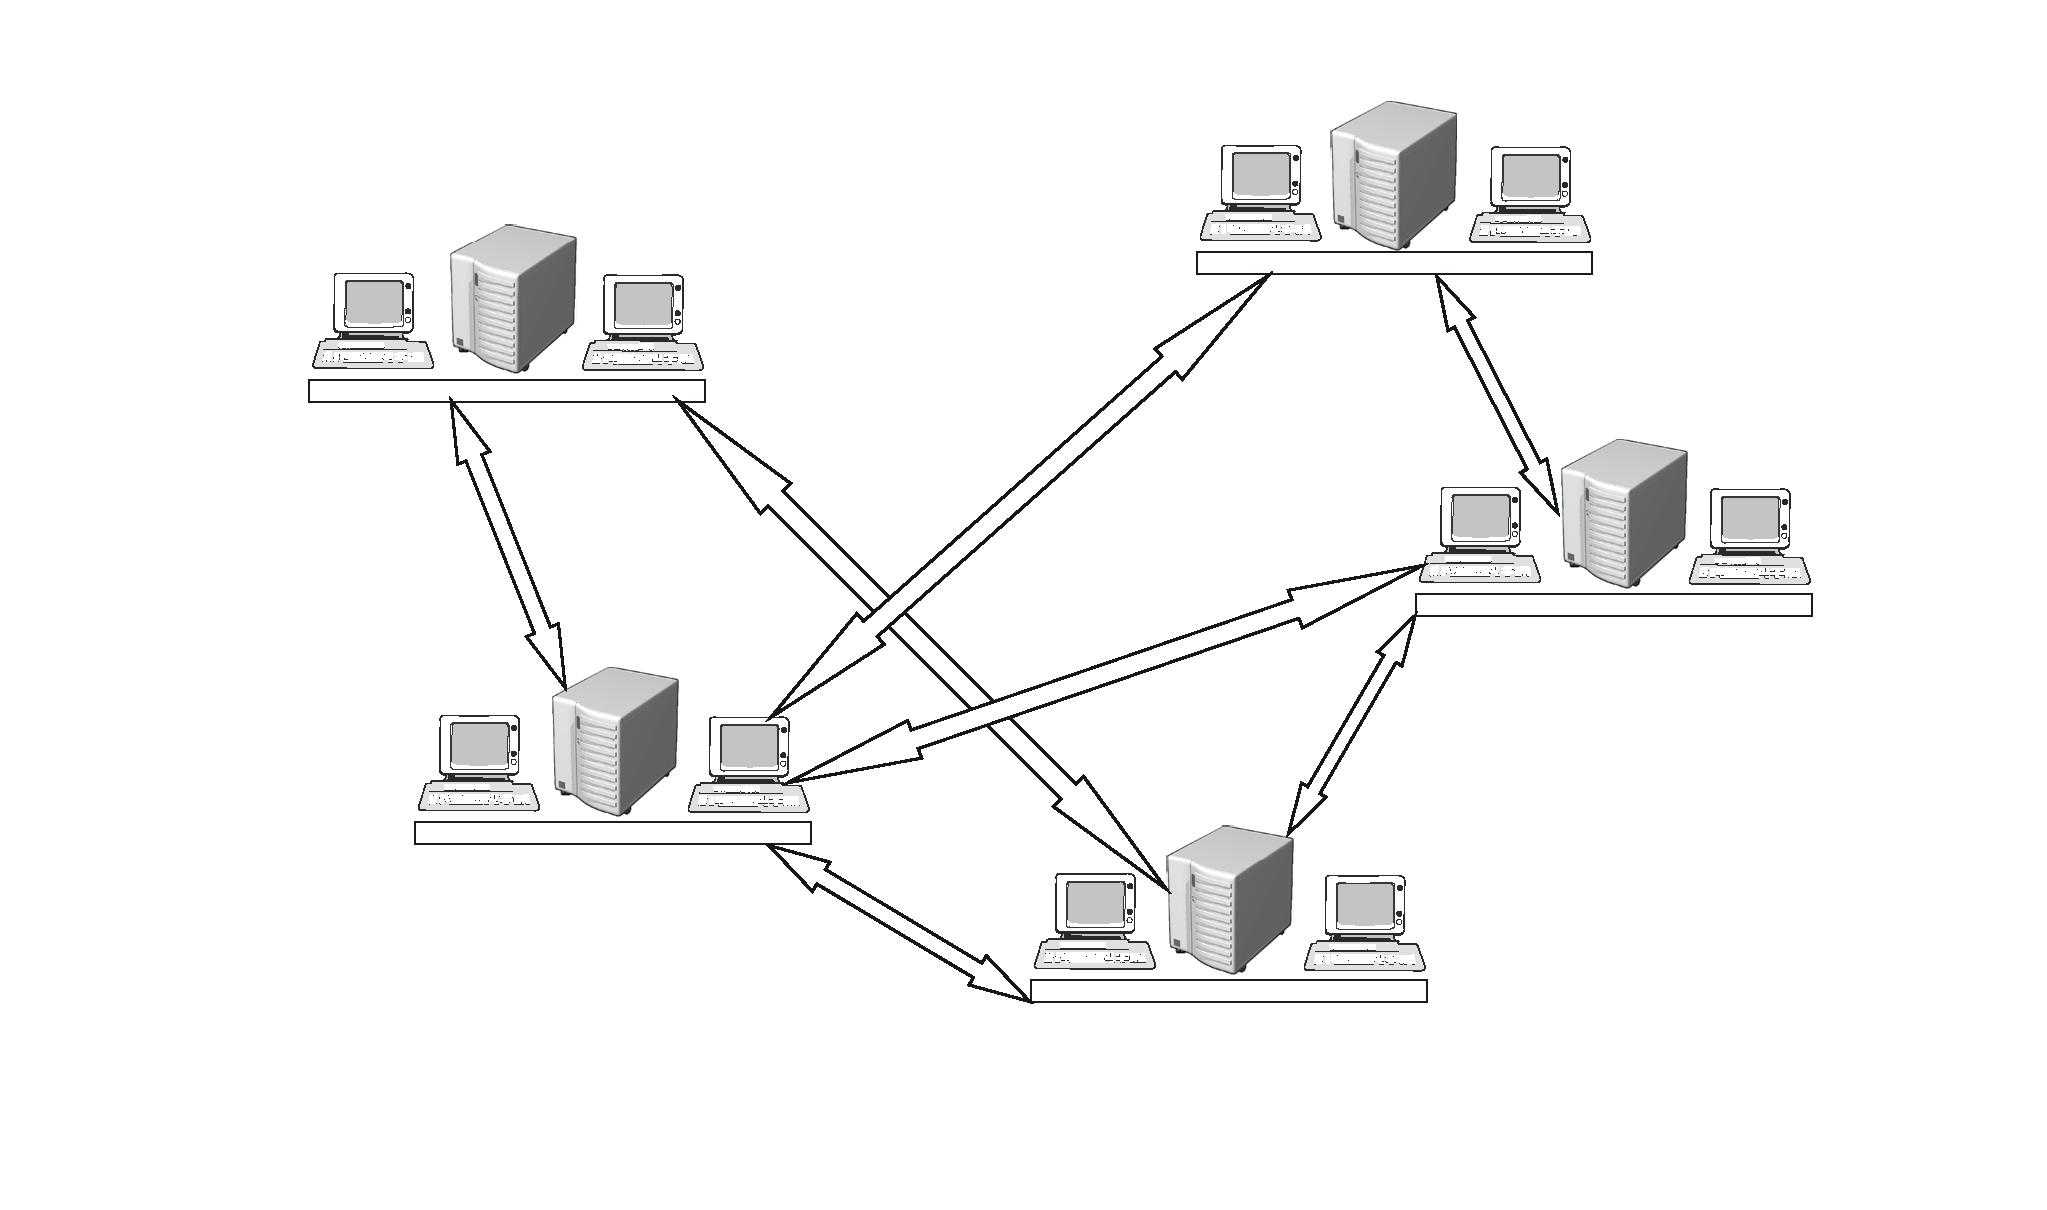 Сетевой т д. Схема топологии сети. Топология локальных сетей схема. Топология сети схема компьютеров. Схема локальной сети 2 компьютера.